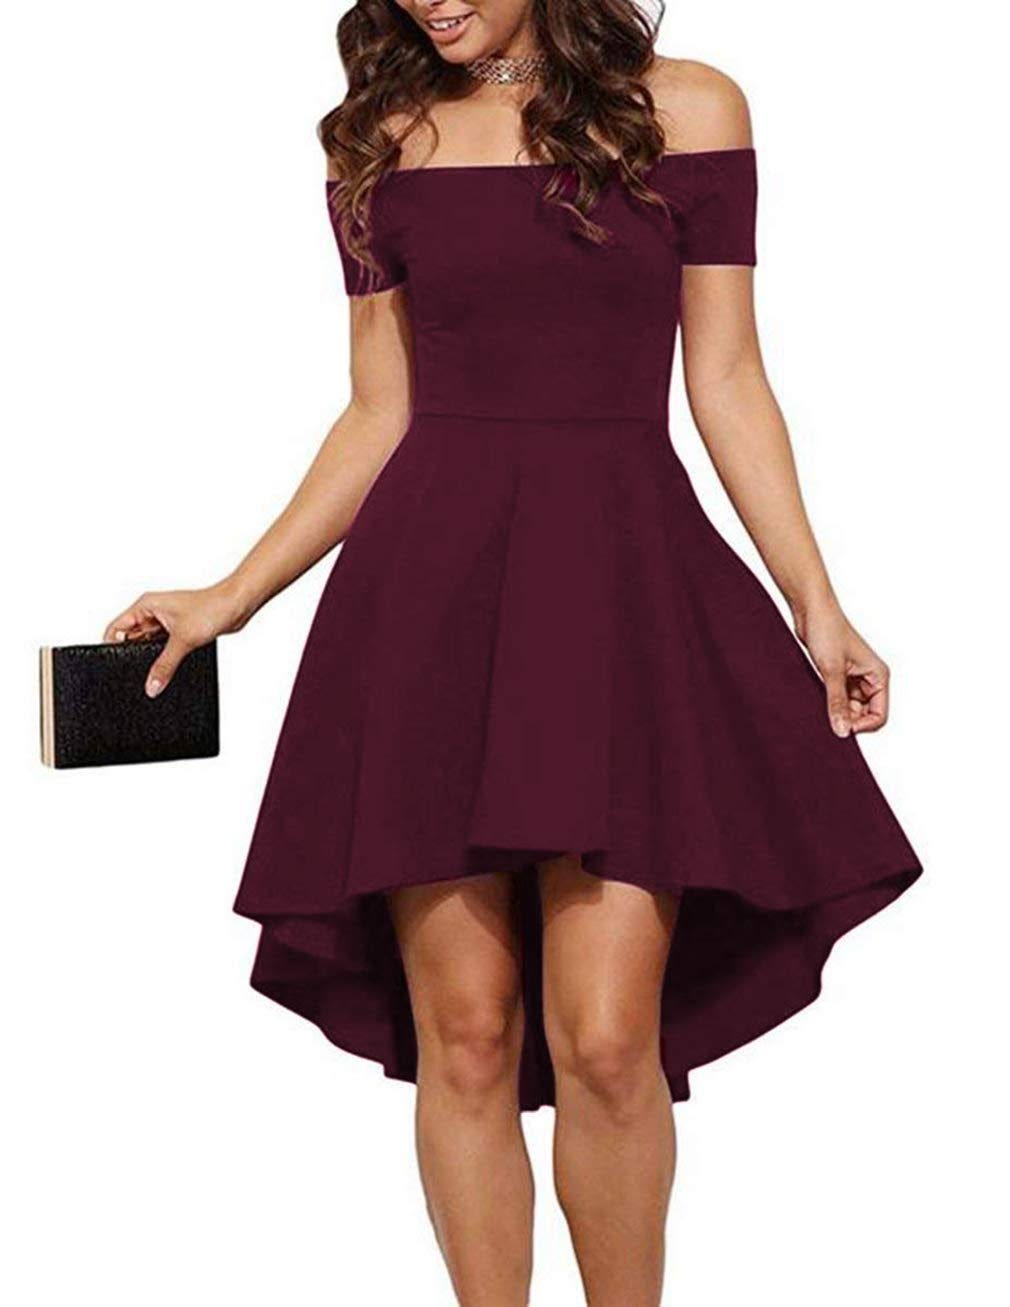 Burgundy Off Shoulder Cocktail Dress | Image